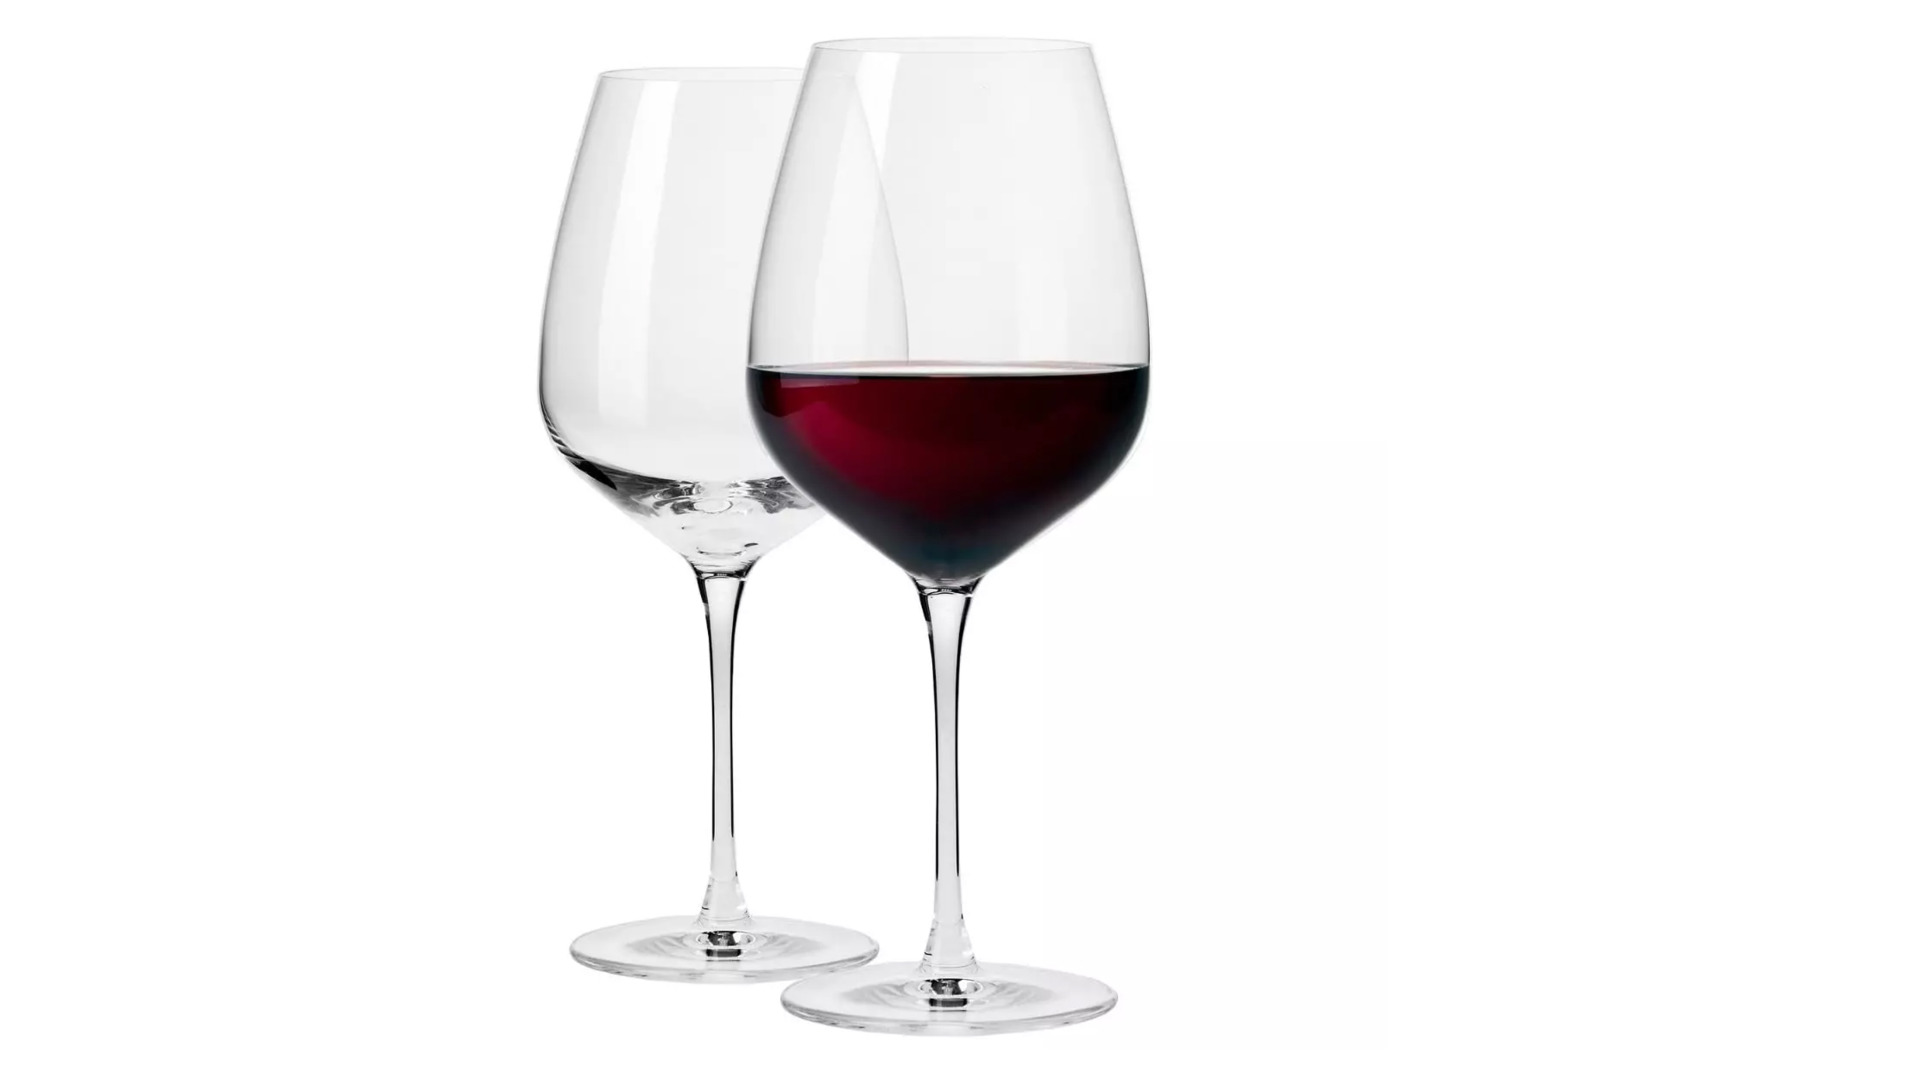 Набор бокалов для красного вина Krosno Дуэт 700 мл, 2 шт